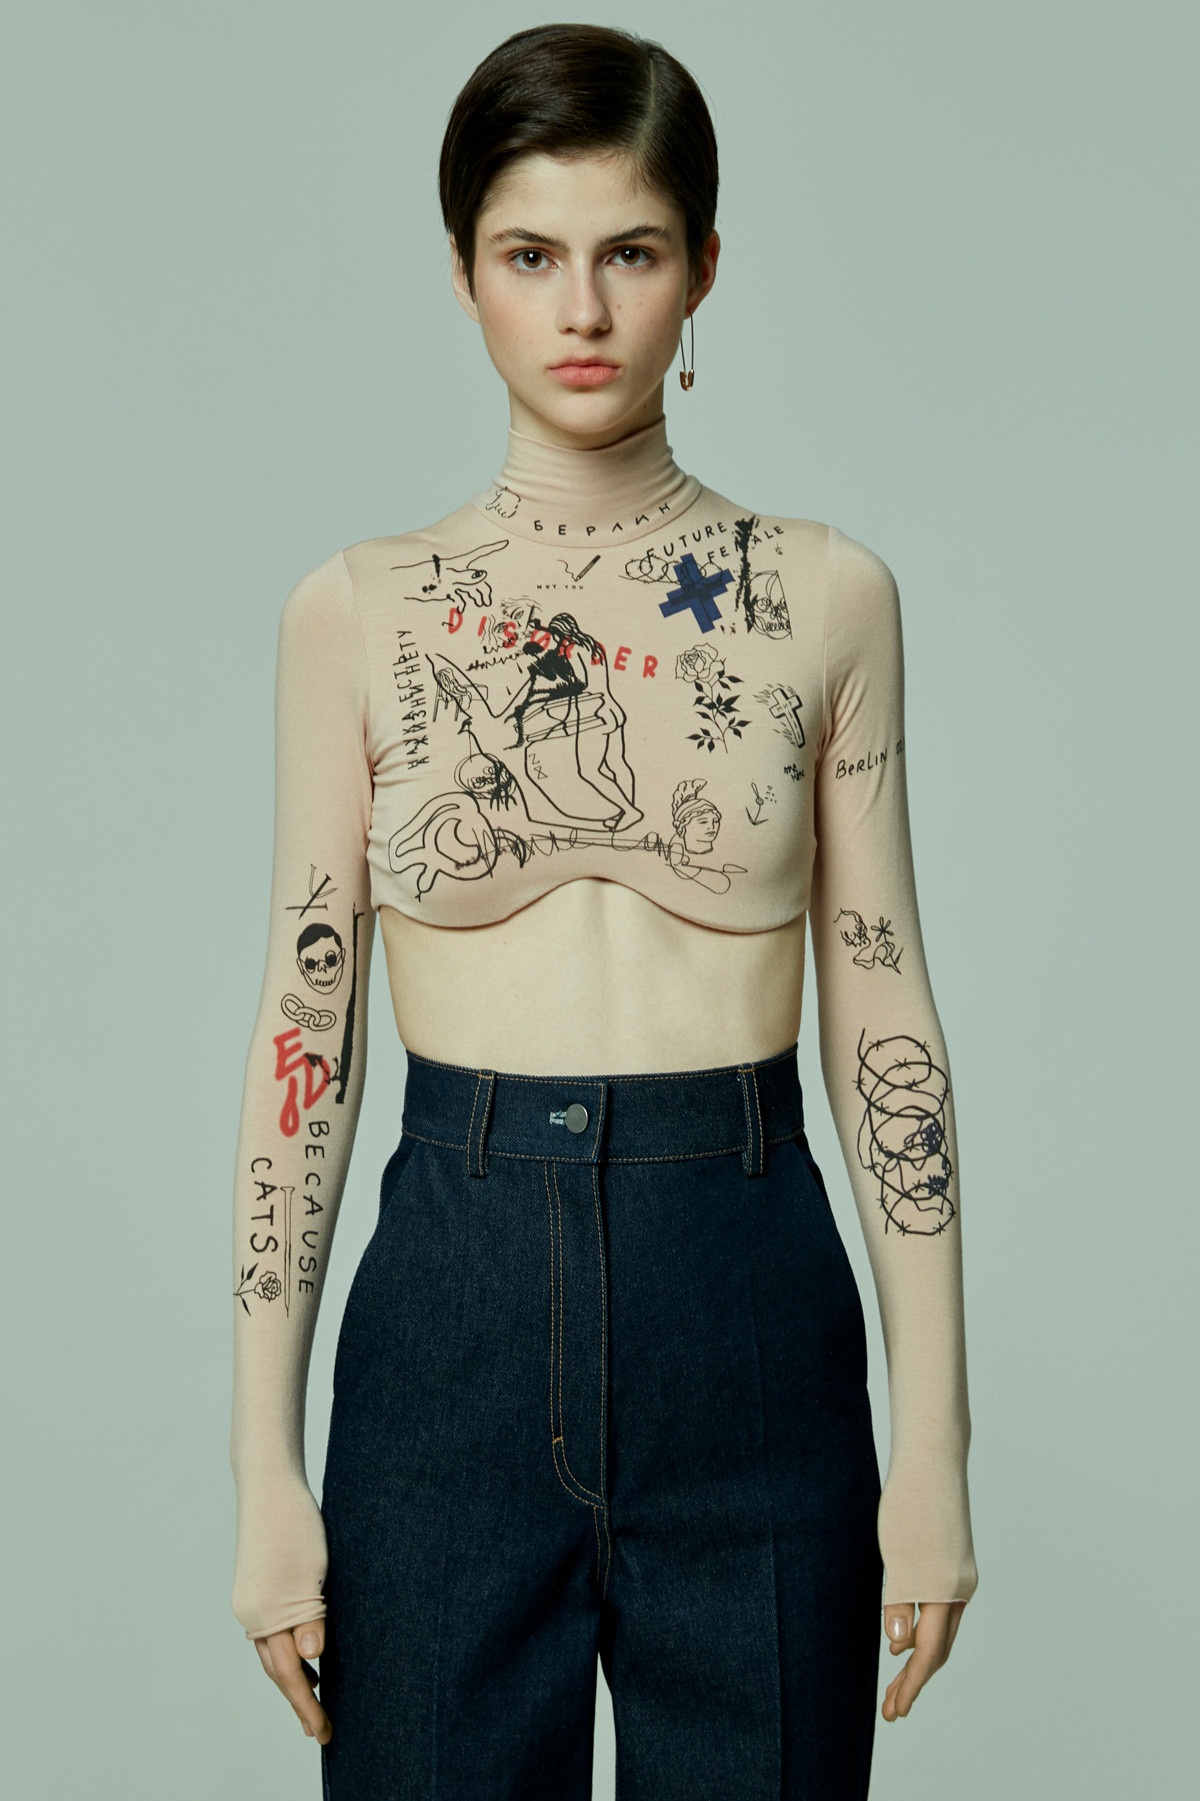 TATTOOSWEATERS, una firma que une la ropa con los tatuajes